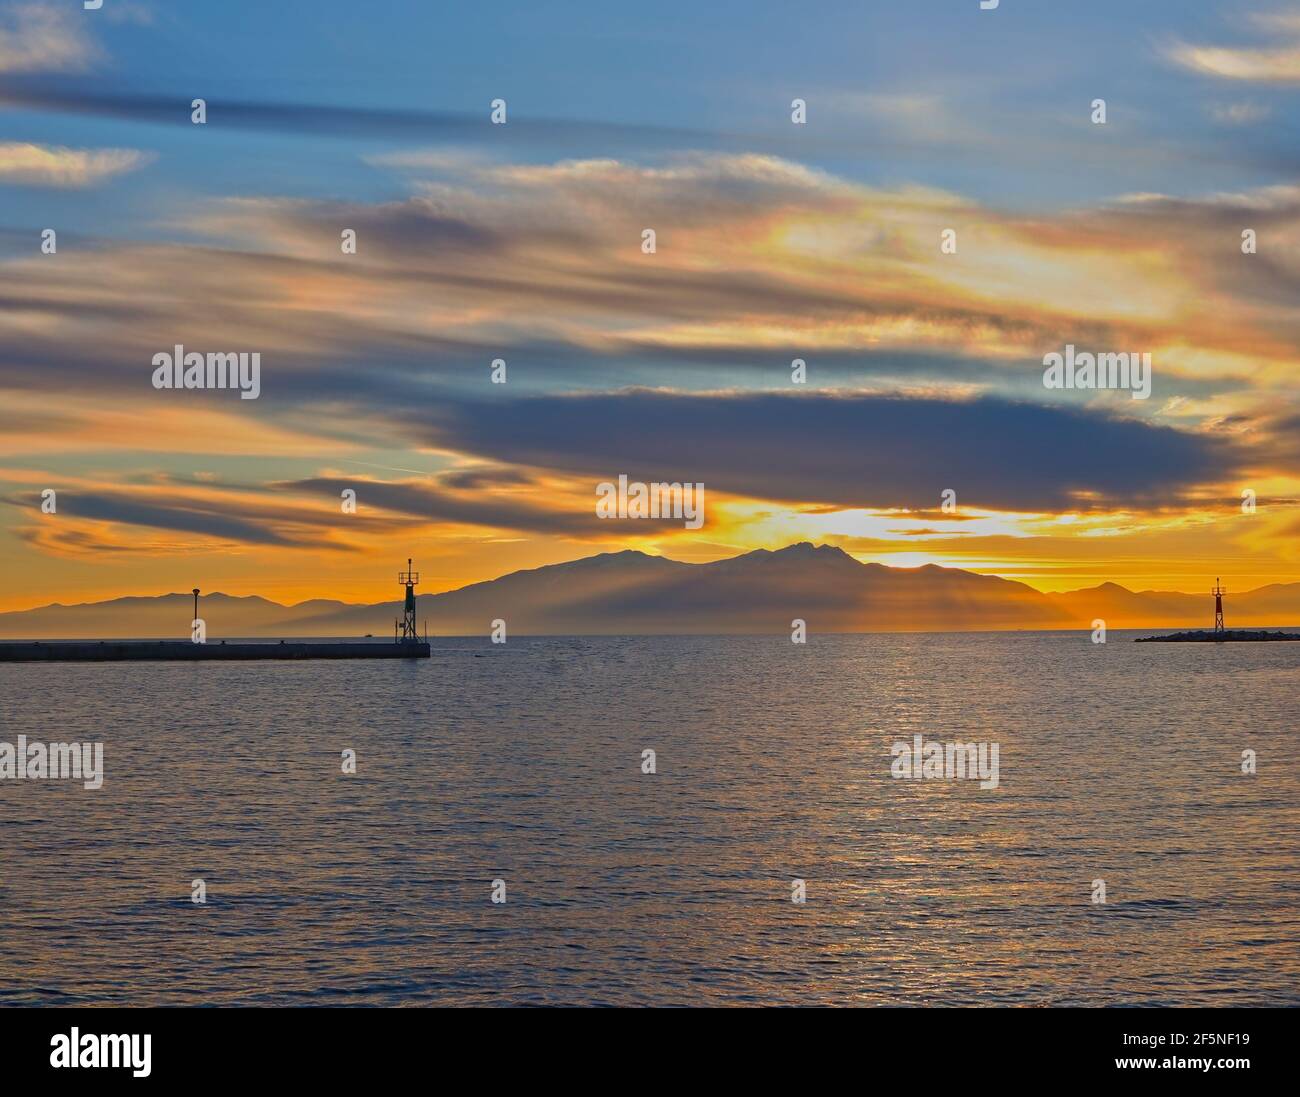 Epanomi, Salonicco, Grecia. Ormos Epanomis, l'ingresso del molo durante il tramonto. Foto Stock